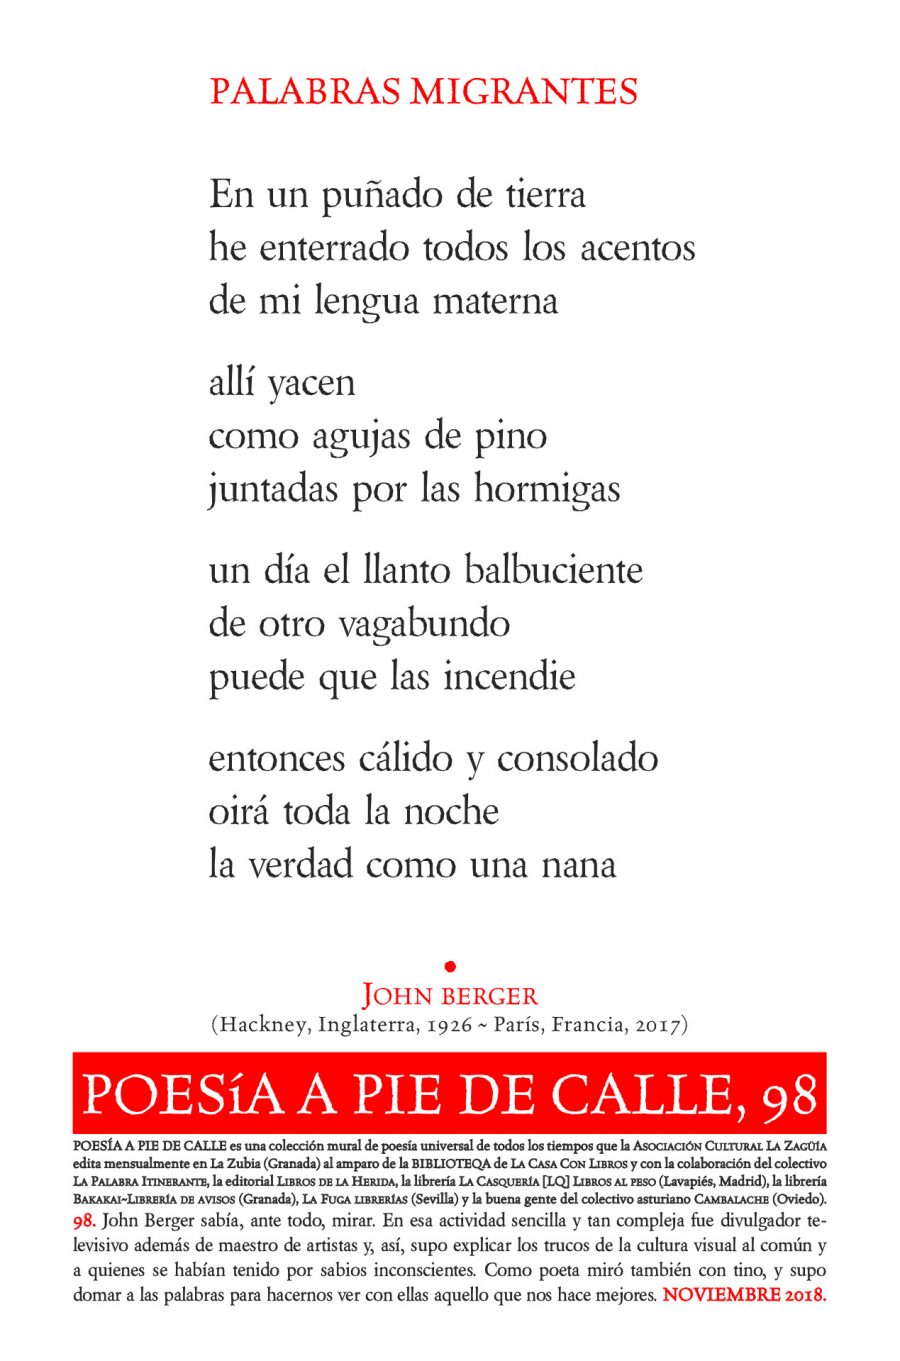 POESÍA A PIE DE CALLE, 98: PALABRAS MIGRANTES, DE JOHN BERGER